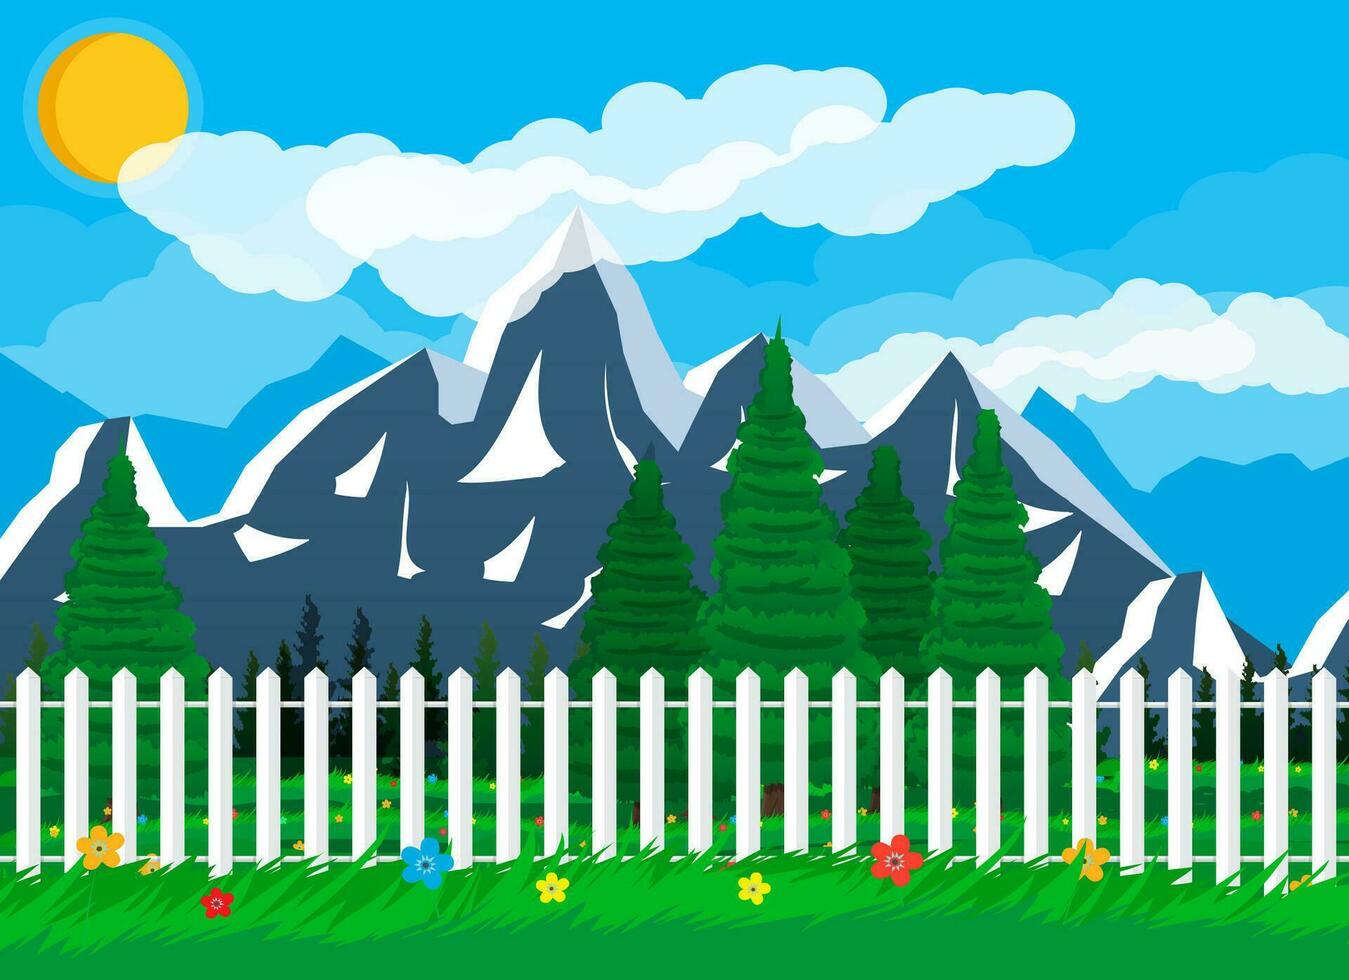 zomer natuur landschap met bergen, Woud, gras, bloem, schutting, lucht, zon en wolken. nationaal park. vector illustratie in vlak stijl